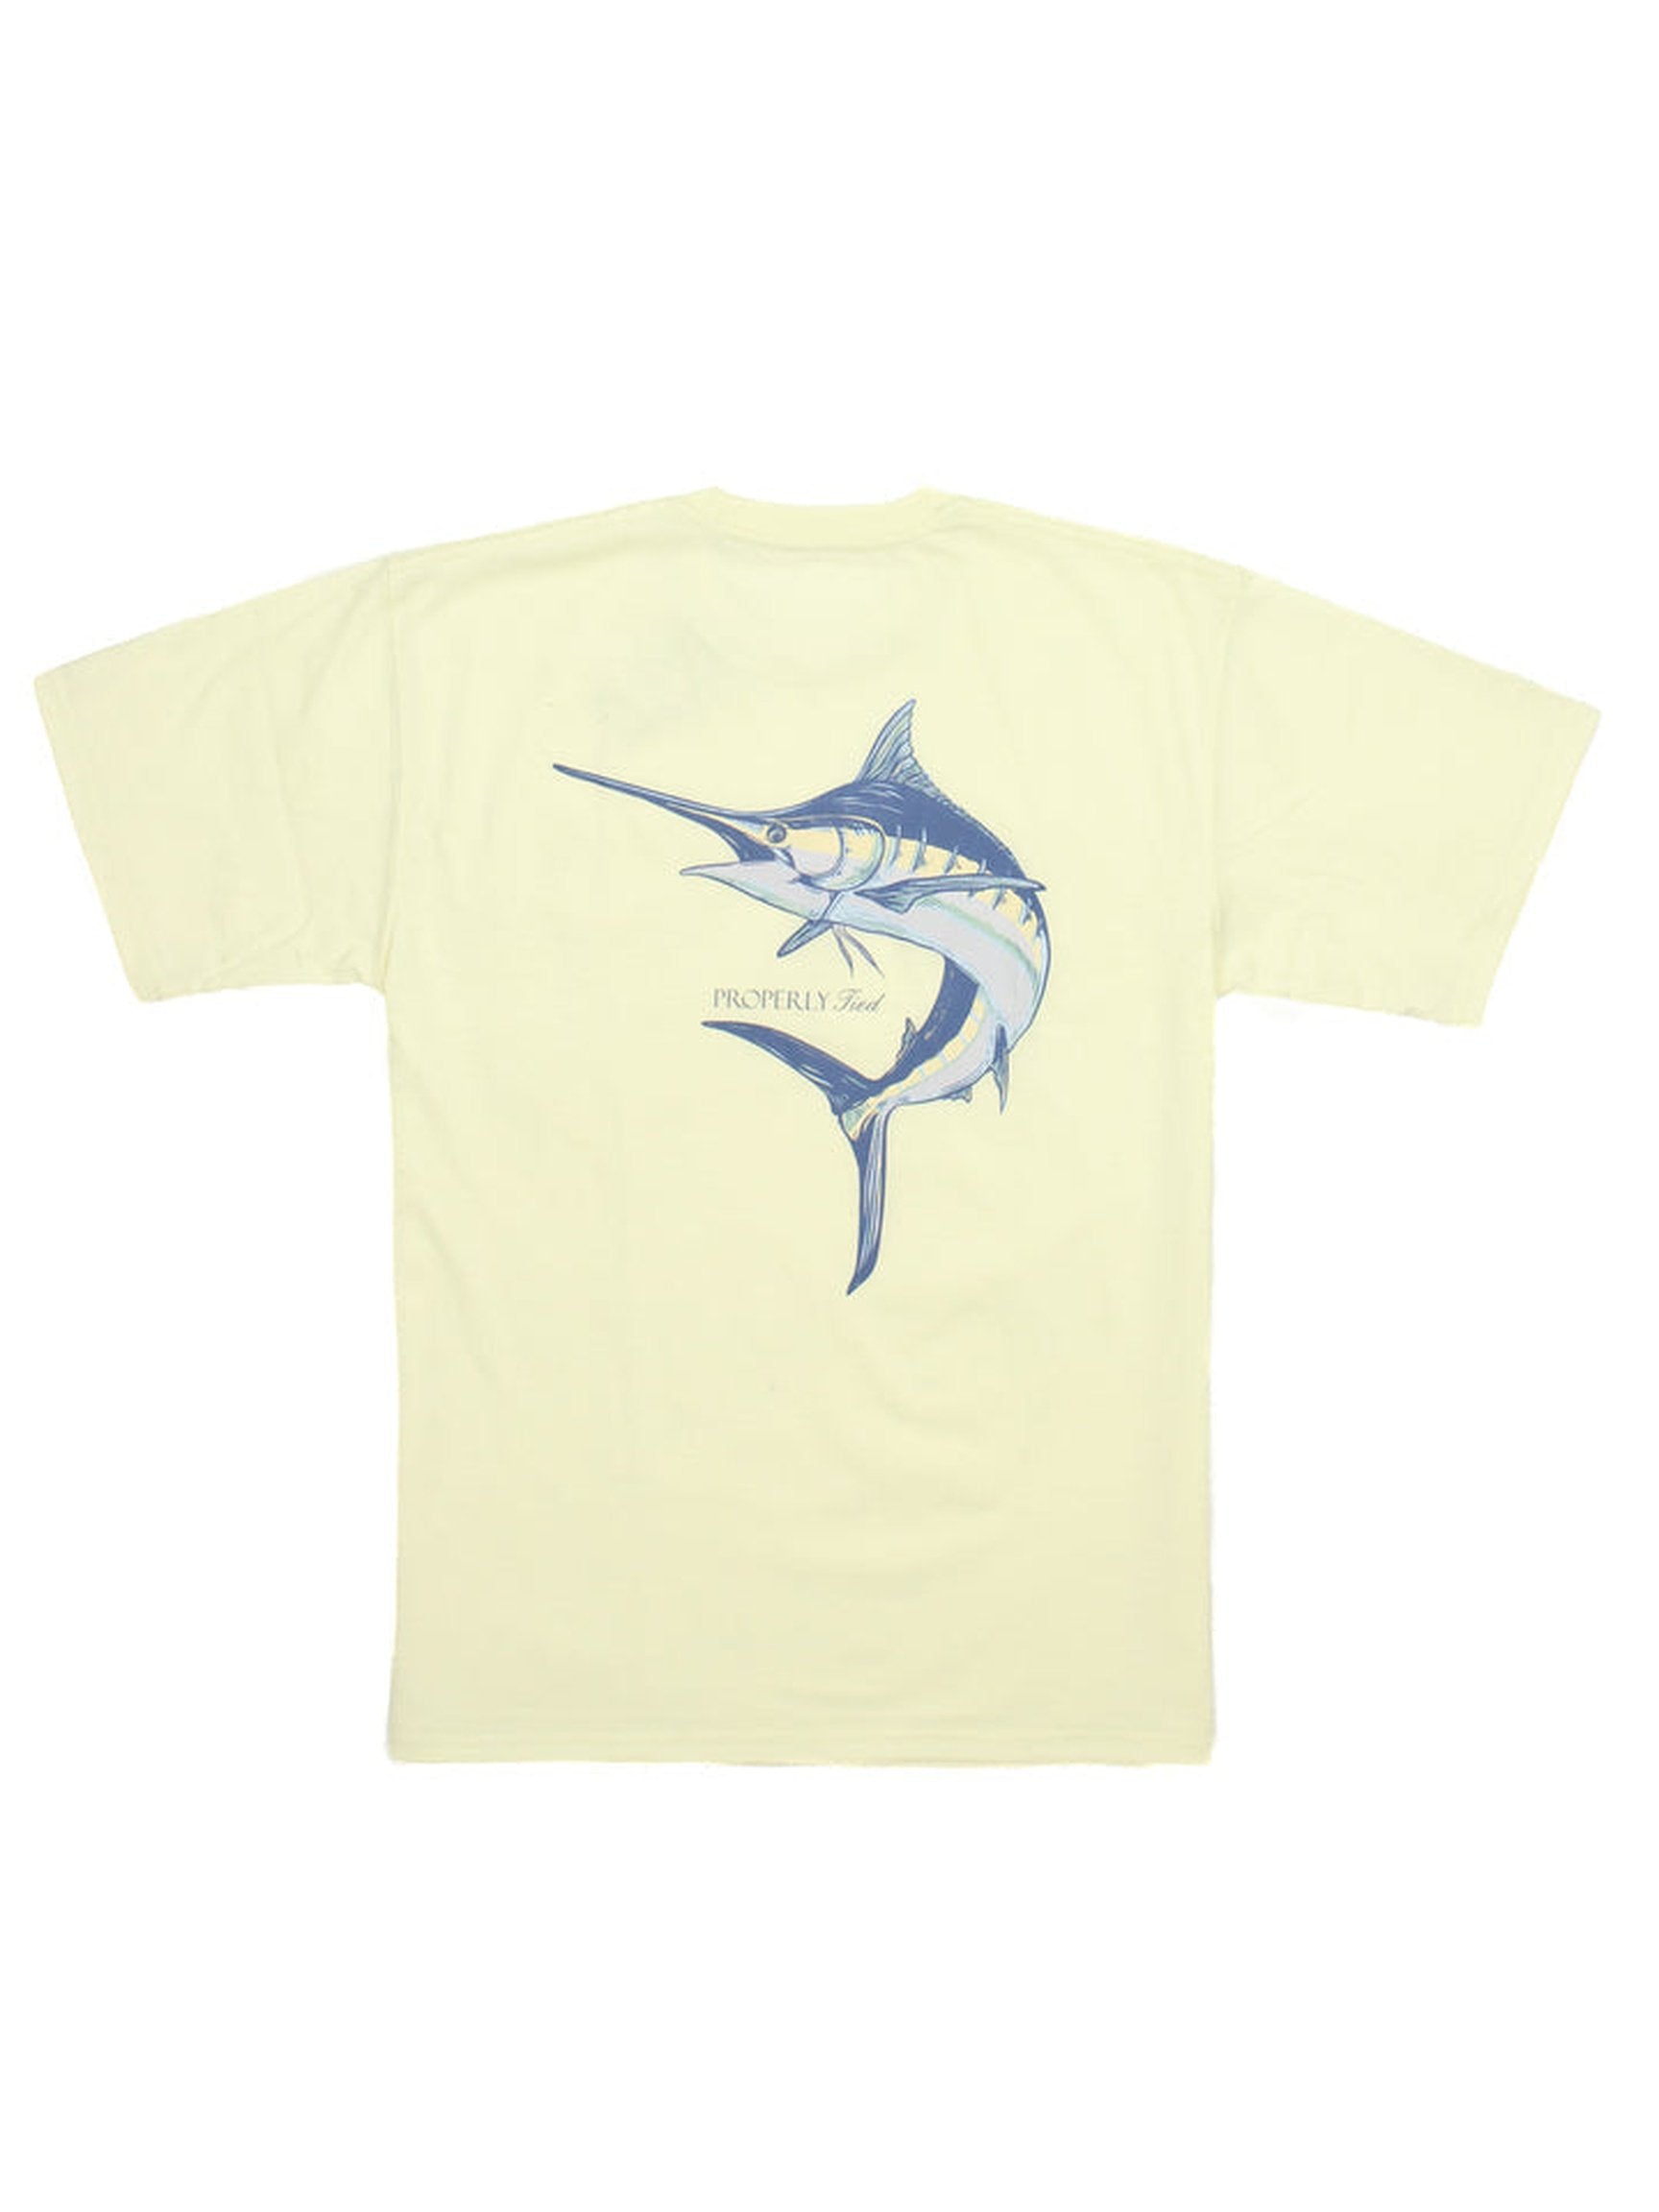 LD Blue Marlin S/S T-Shirt - Light Yellow